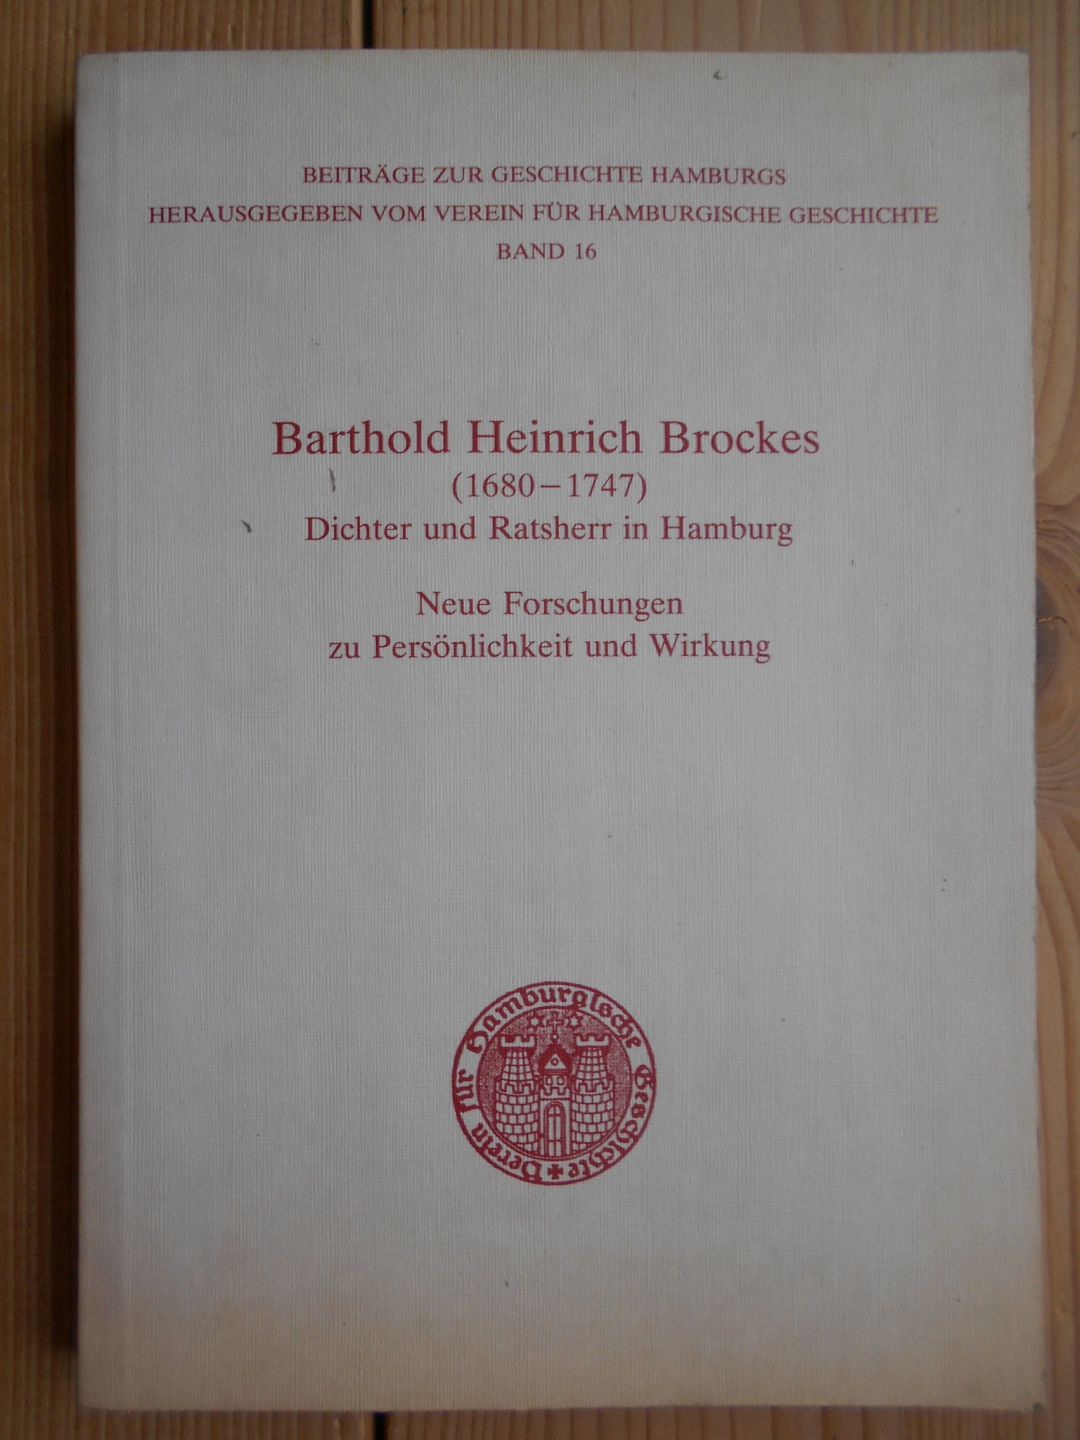 Barthold Heinrich Brockes : (1680 - 1747) ; Dichter u. Ratsherr in Hamburg ; neue Forschungen zu Persönlichkeit u. Wirkung. hrsg. von Hans-Dieter Loose / Beiträge zur Geschichte Hamburgs ; Bd. 16 - Loose, Hans-Dieter (Herausgeber)